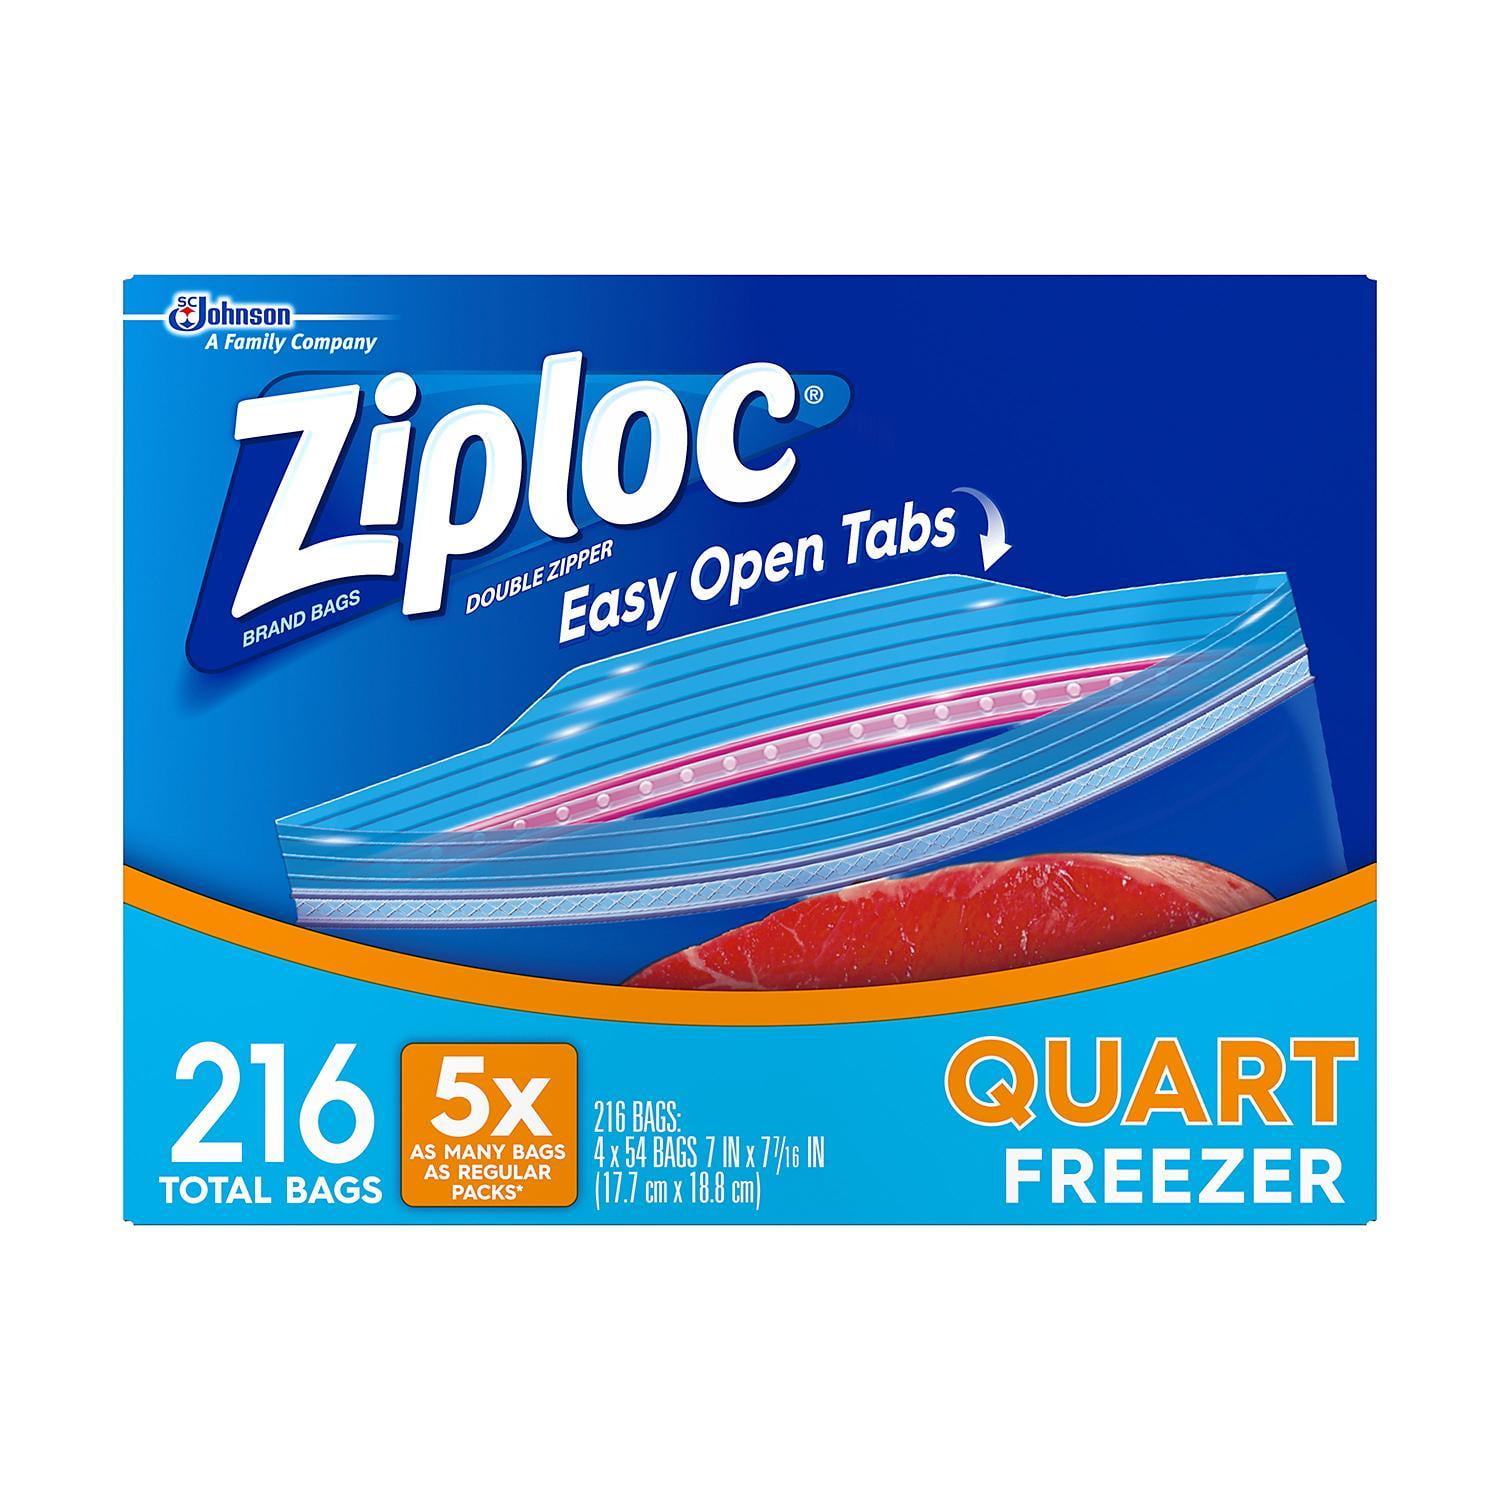 152 Ct Ziploc Easy Open Tabs Storage Gallon Ffreezer Double Zipper Bags